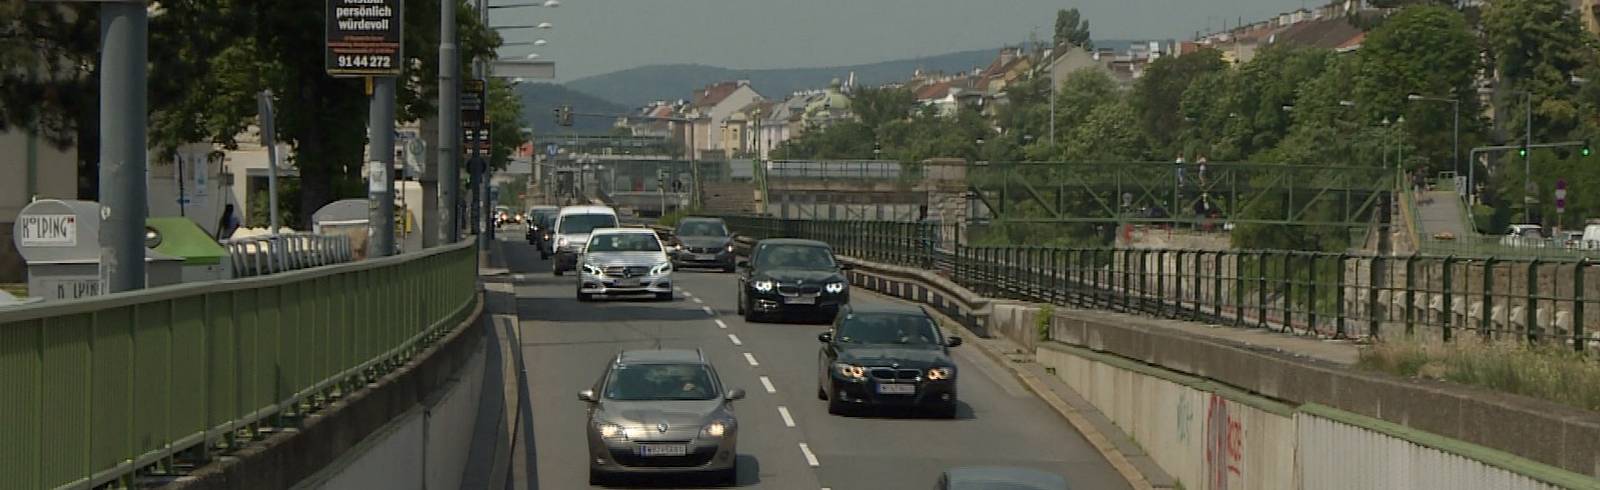 City-Maut: Verkehrsexperten uneins